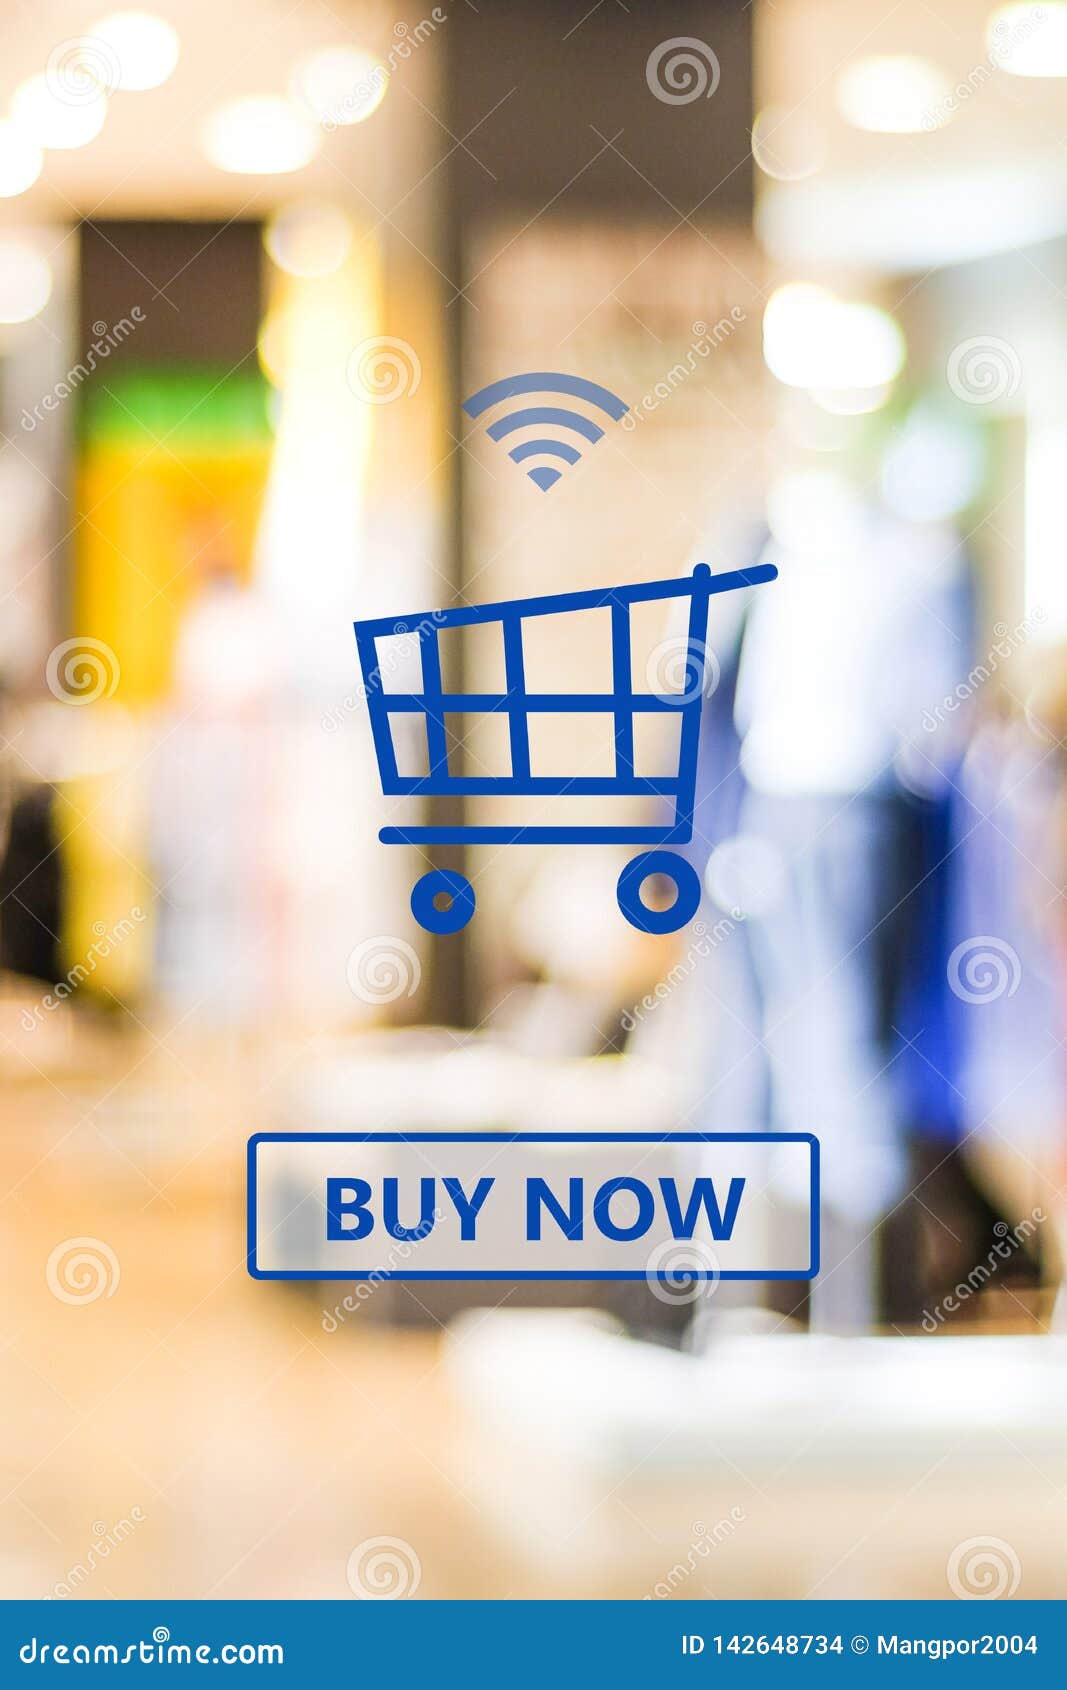 Banner trang web, thiết bị mua sắm trực tuyến: Banner trang web và thiết bị mua sắm trực tuyến giúp bạn tiết kiệm thời gian và tiền bạc khi mua sắm. Hãy xem hình ảnh này để tìm kiếm những sản phẩm đáng mua và những ưu đãi hấp dẫn nhất.